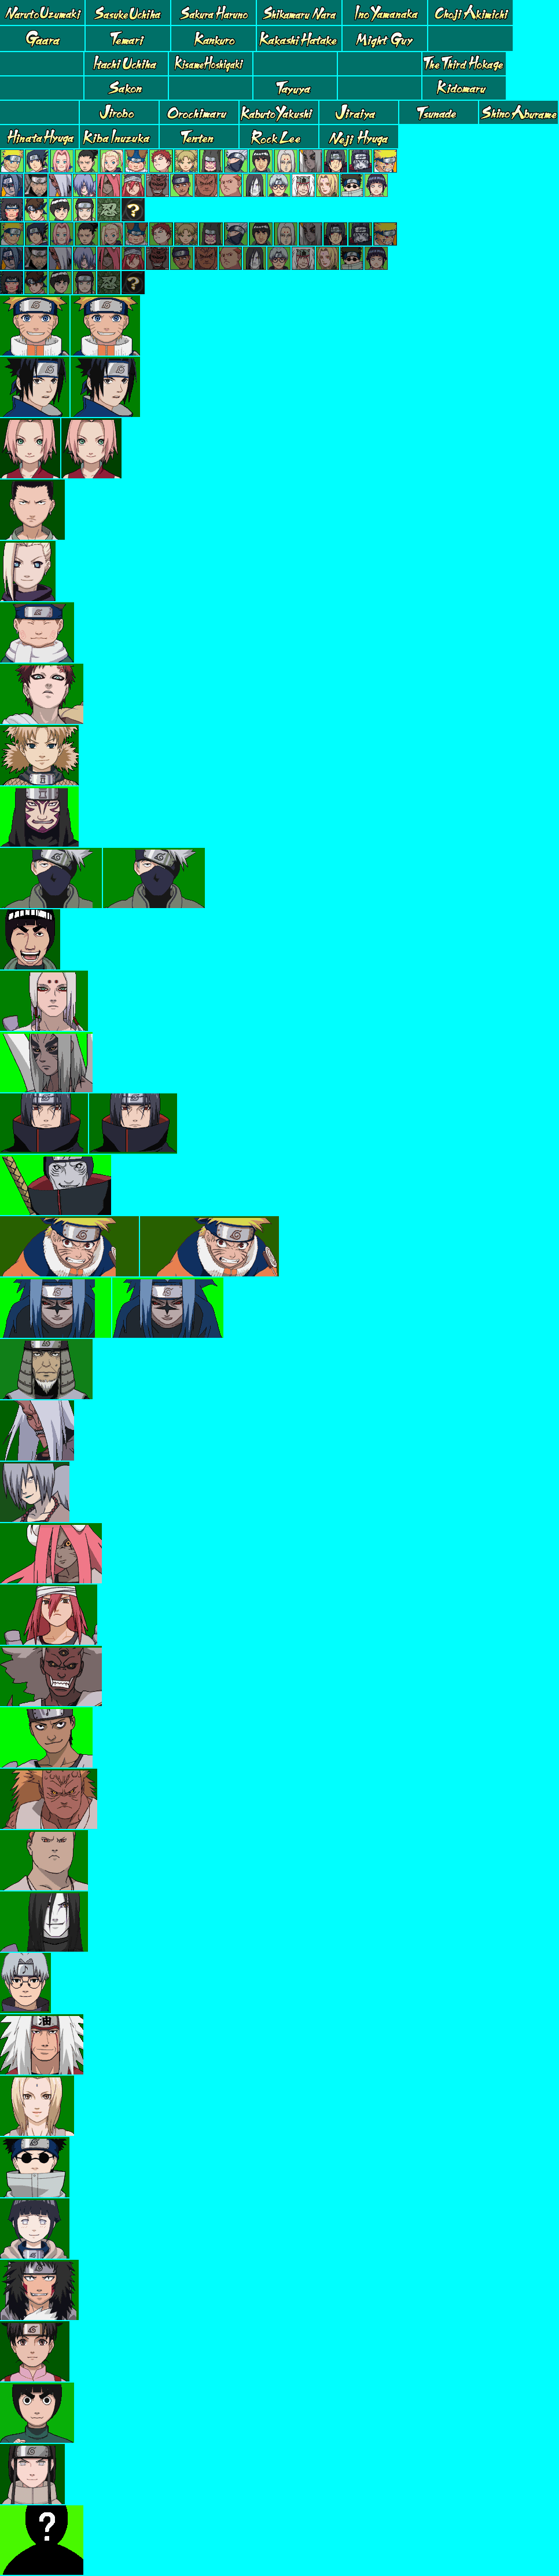 Naruto Shippuden: Ninja Council 3 - Character Icons